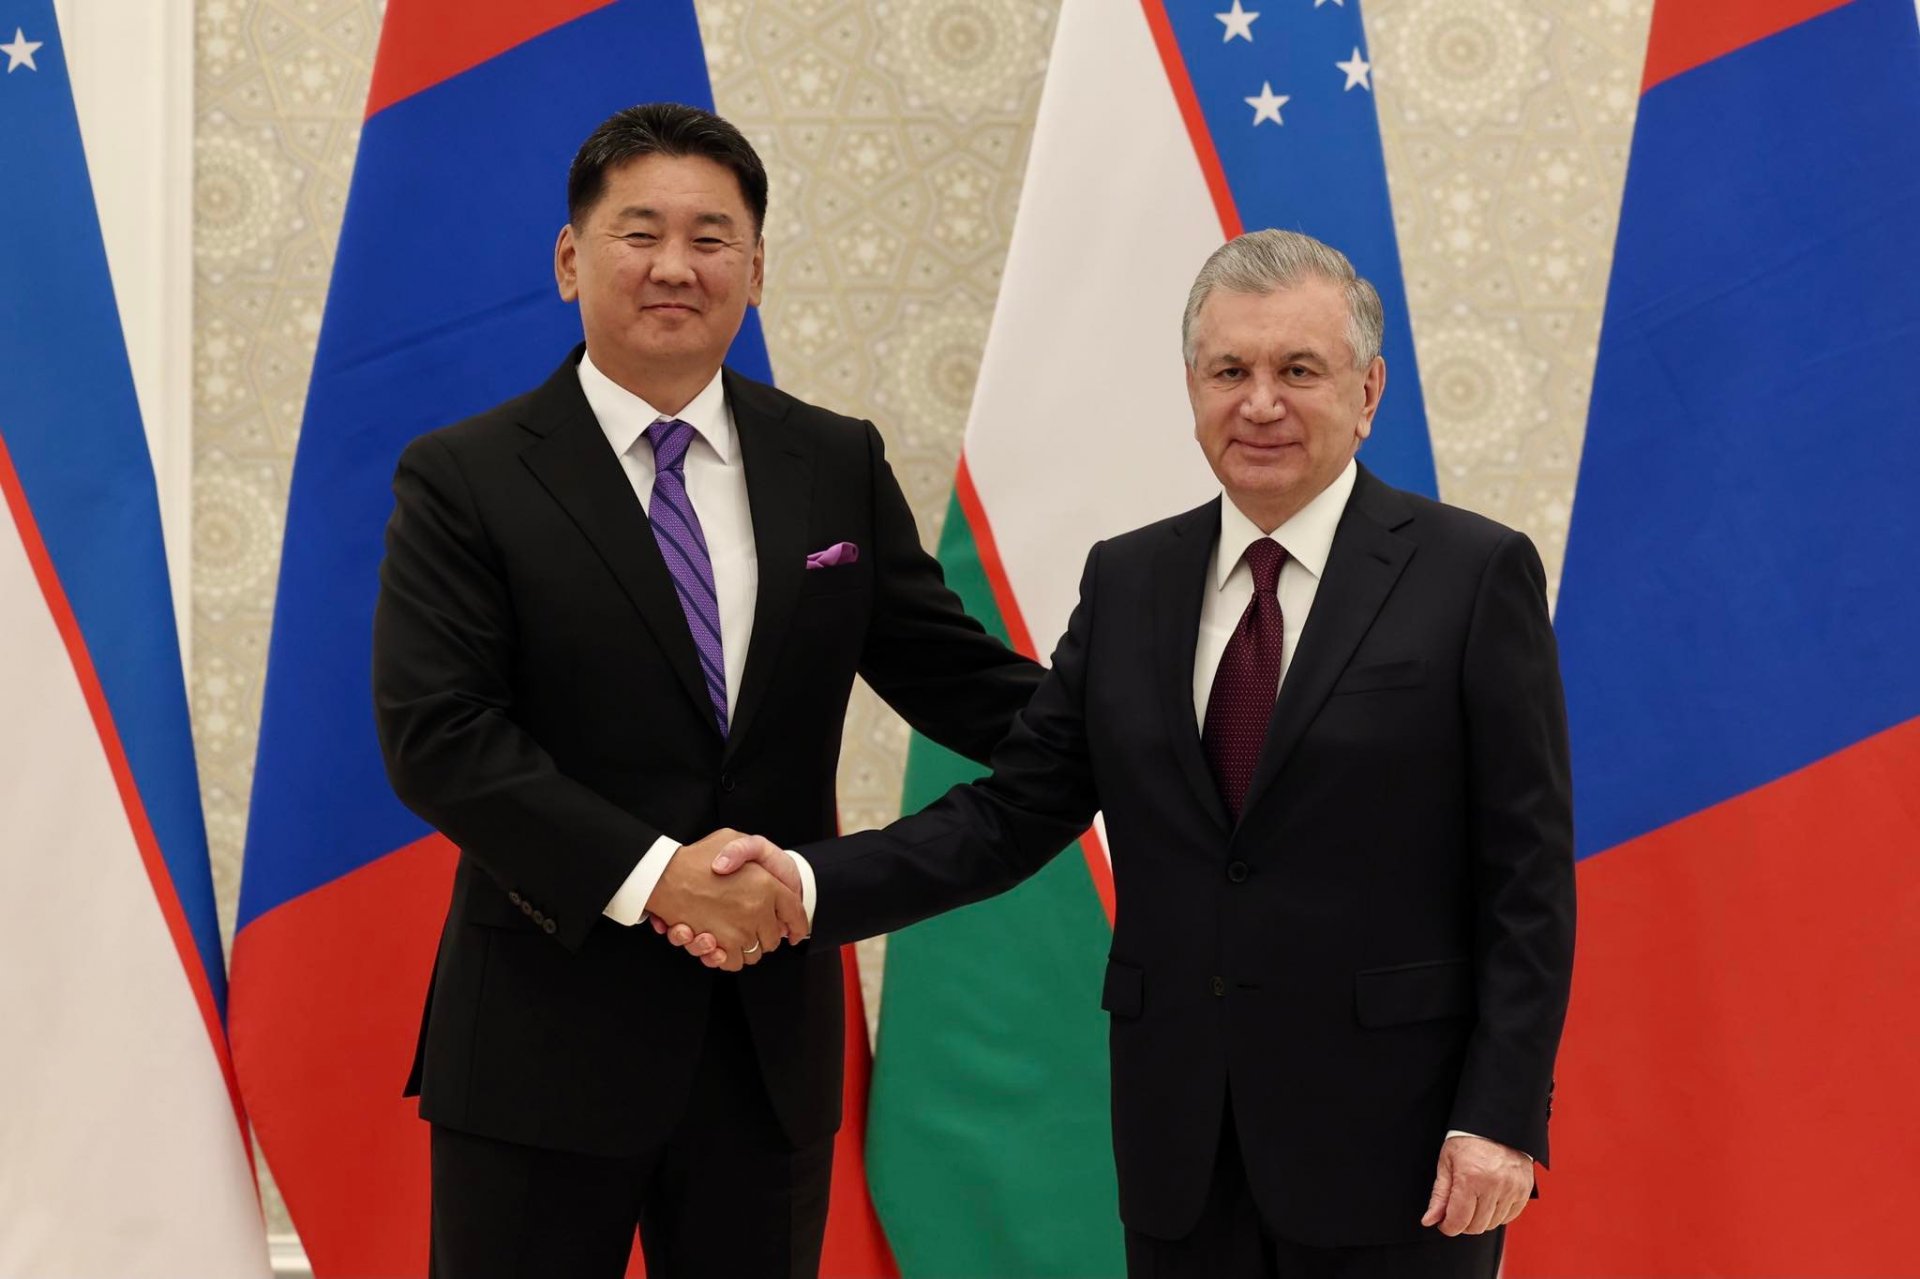 Ерөнхийлөгч У.Хүрэлсүх Бүгд Найрамдах Узбекистан Улсын Ерөнхийлөгч Ш.Мирзиёев-тэй уулзав